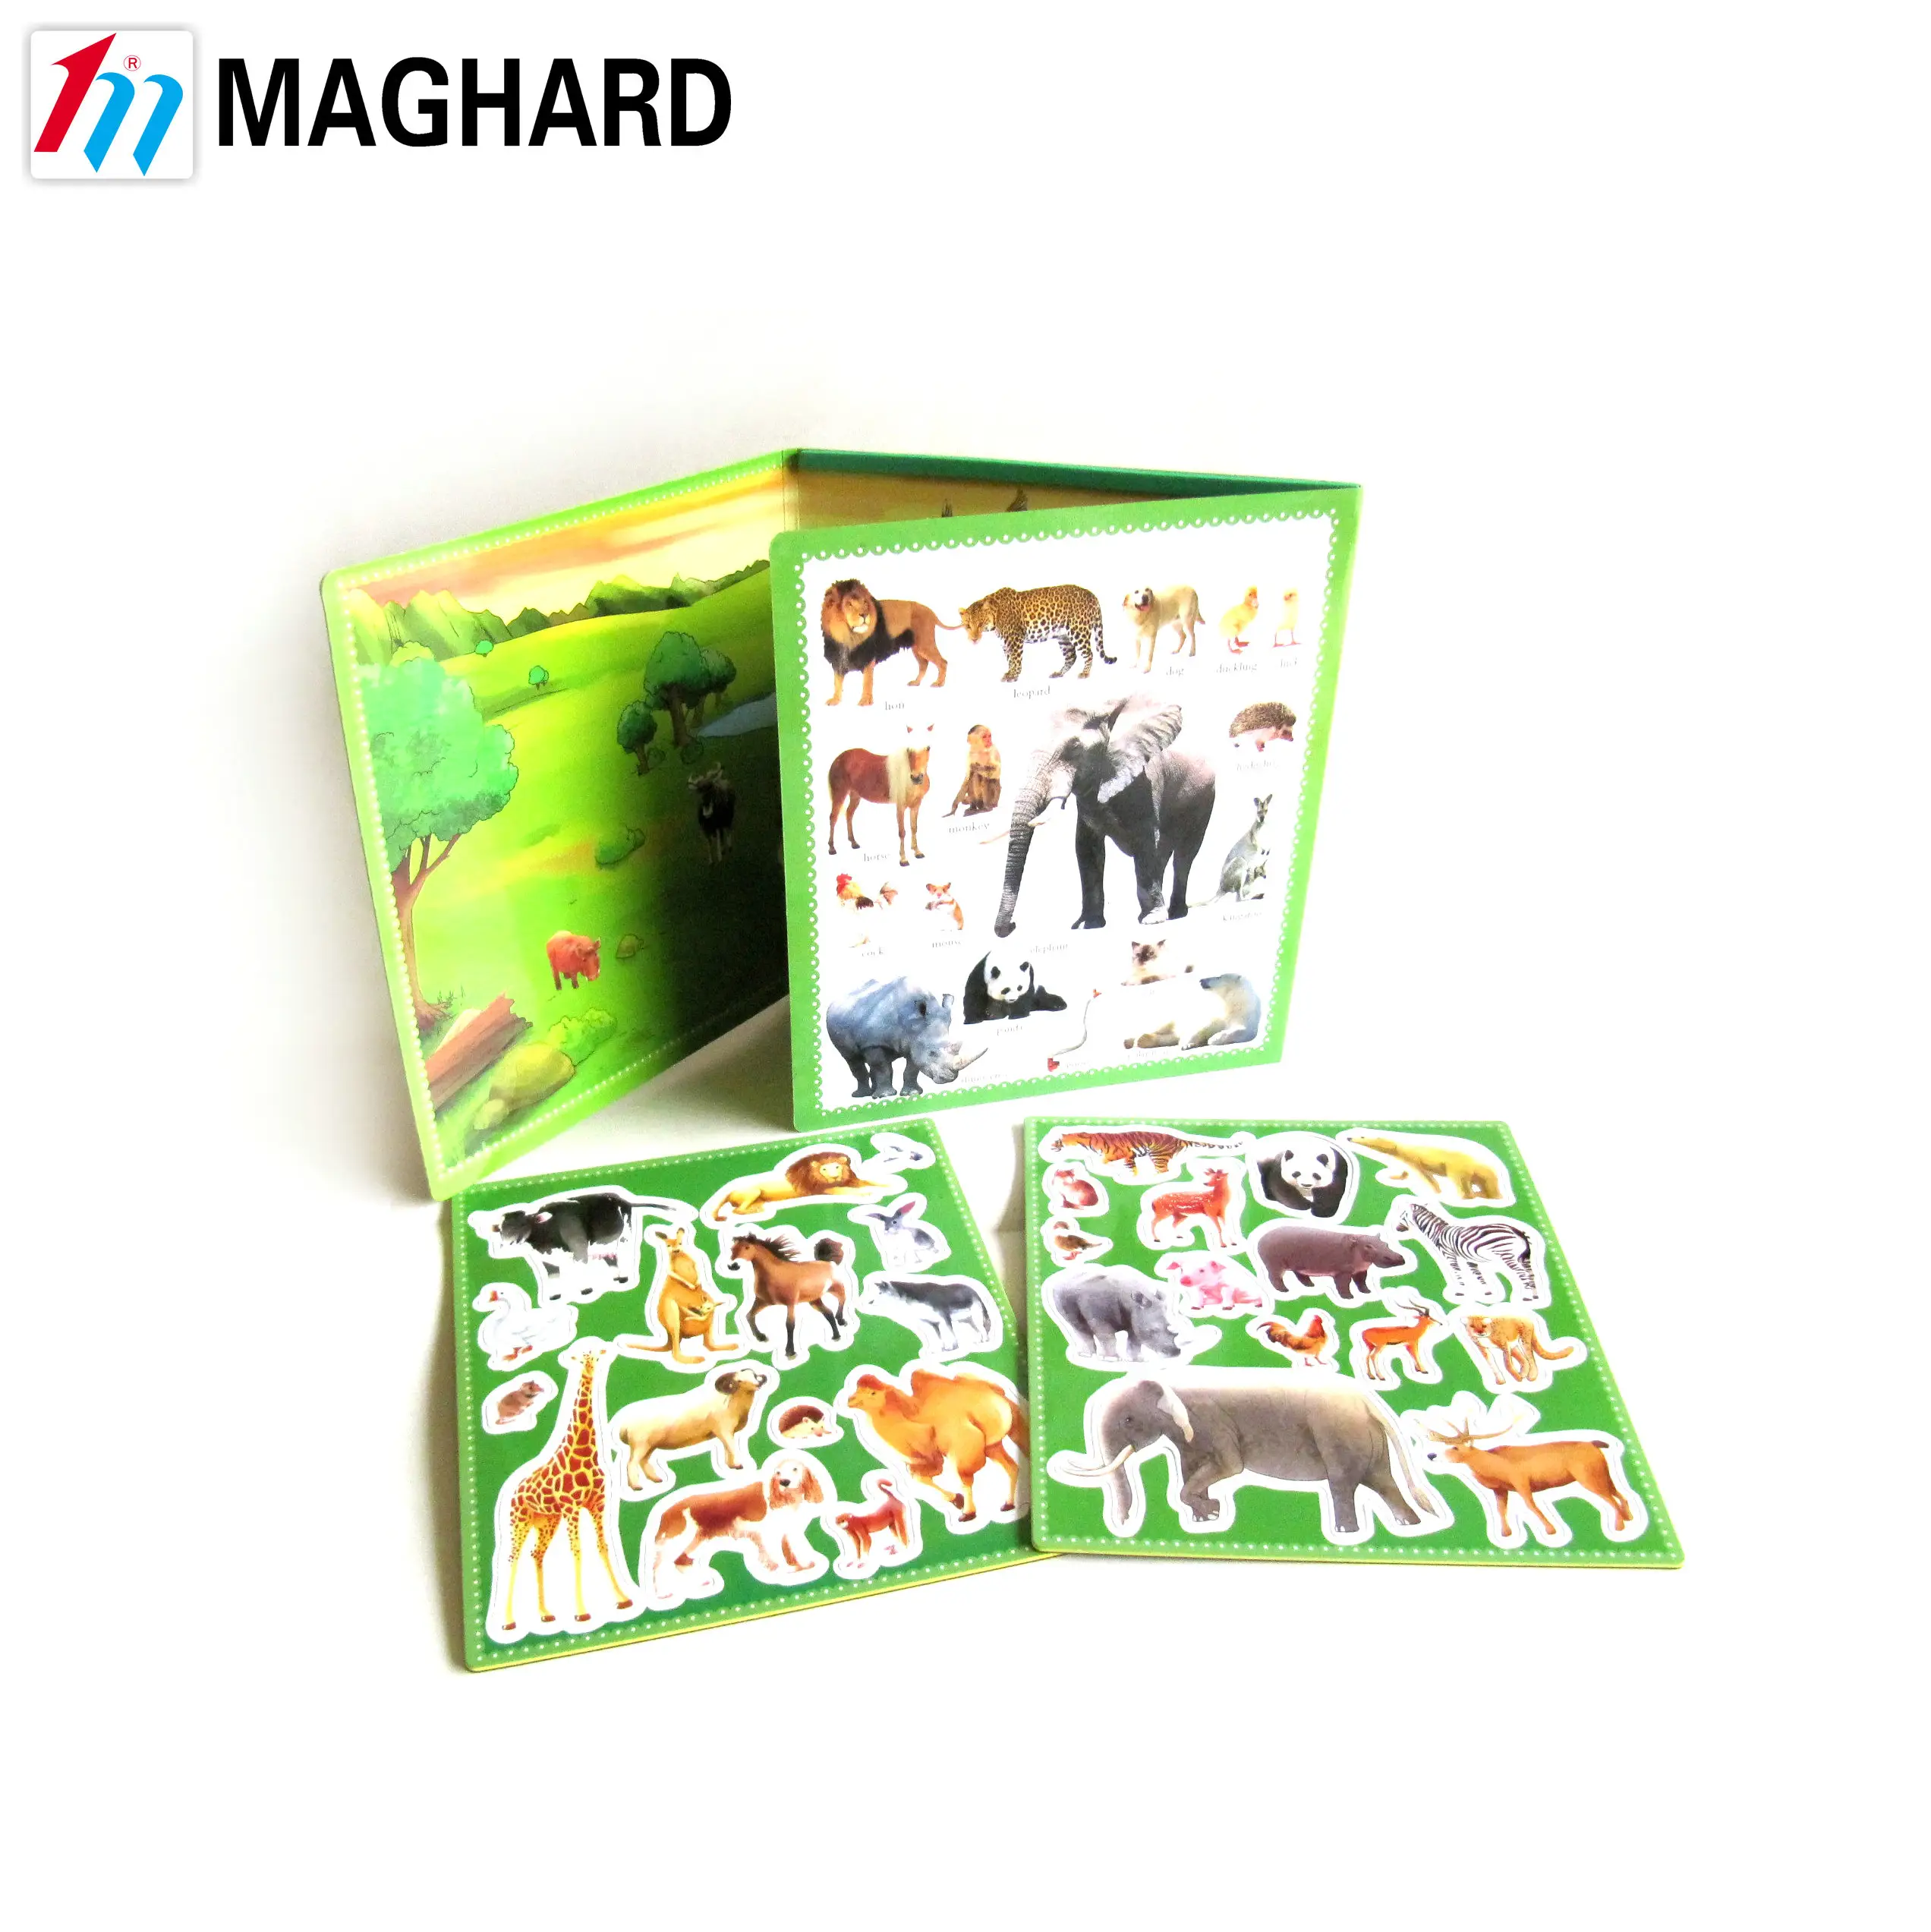 Magnetische Leren Onderwijs Speelgoed Stickers Boek Diy Magneet Speelgoed Puzzel Game Cartoon Zoo Dieren Creatie Magnetische Sticker Pad